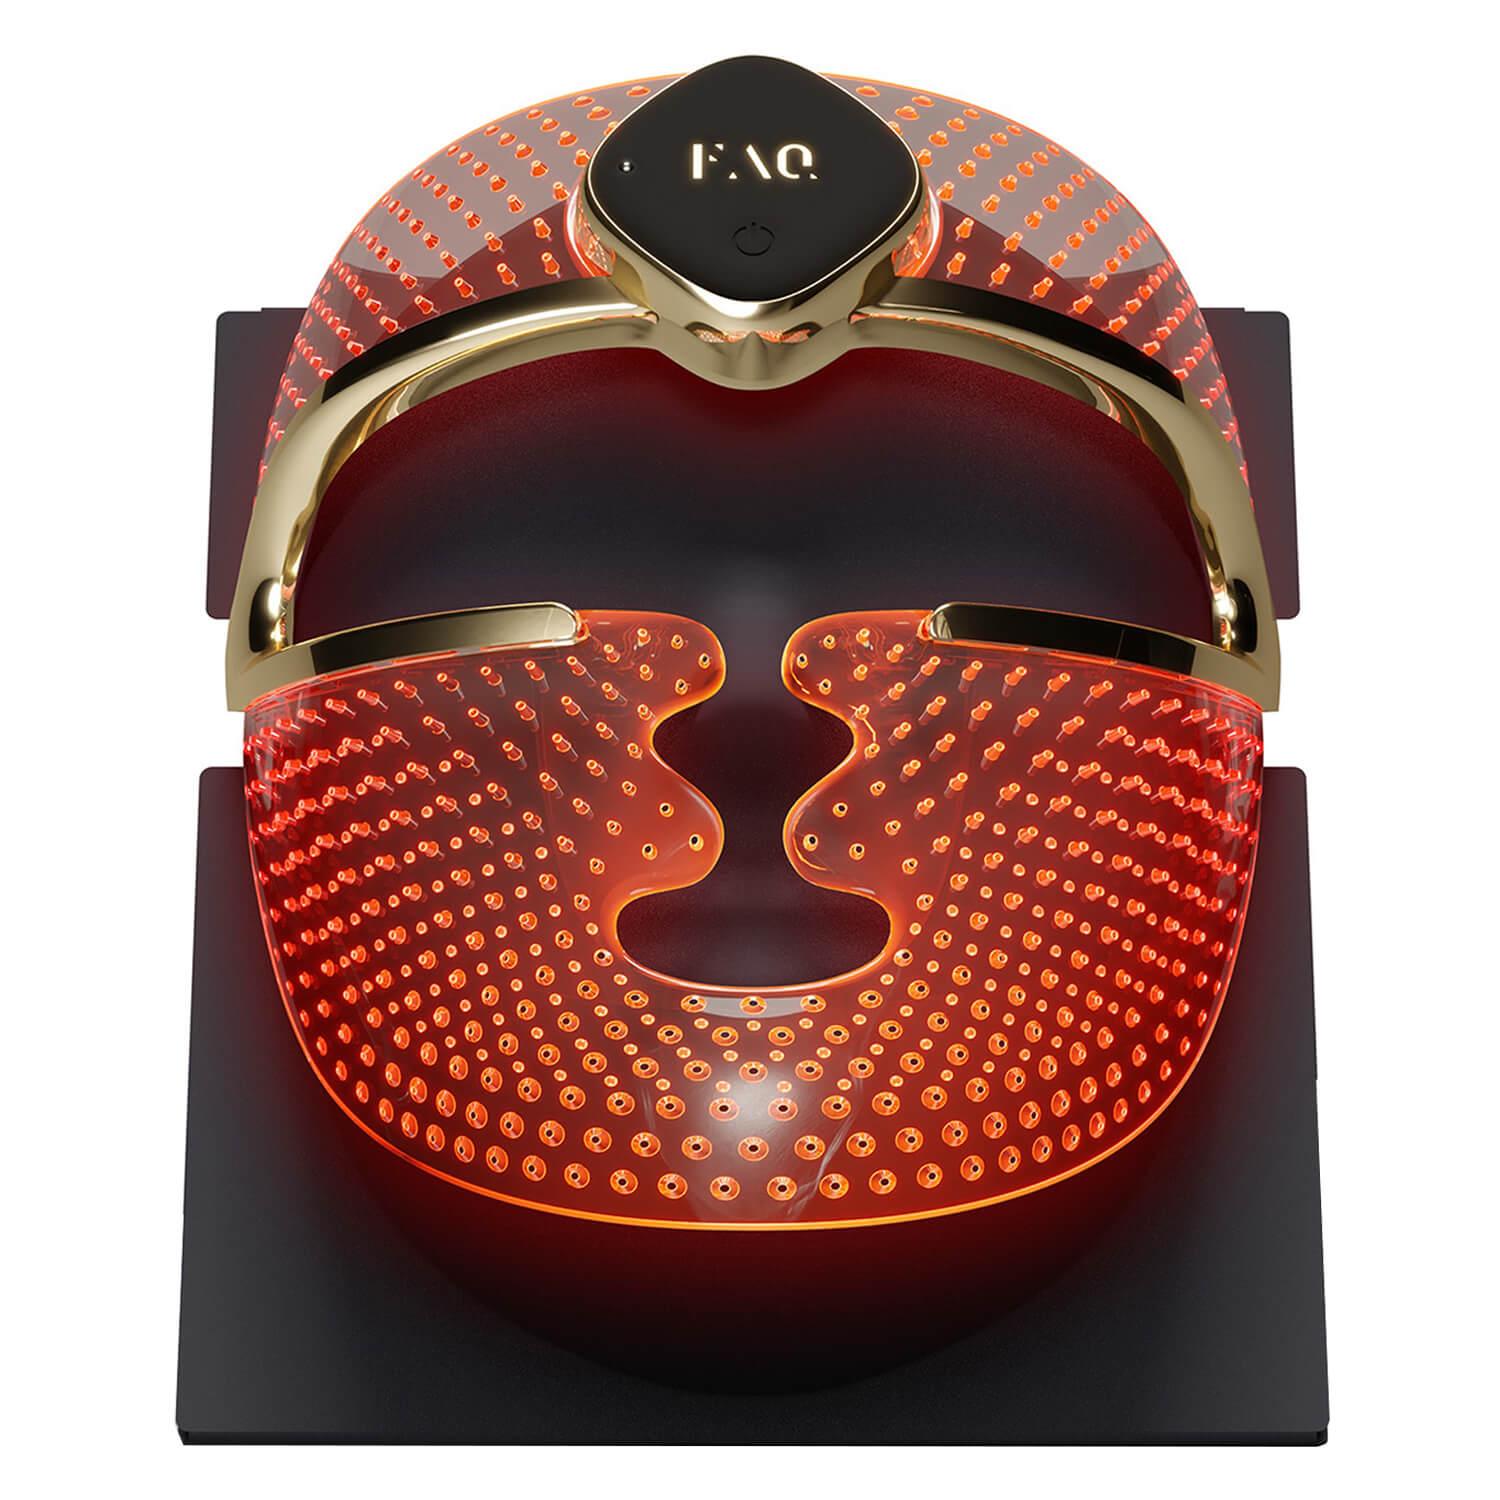 FAQ™ - 202 Smart Silicone LED Face Mask